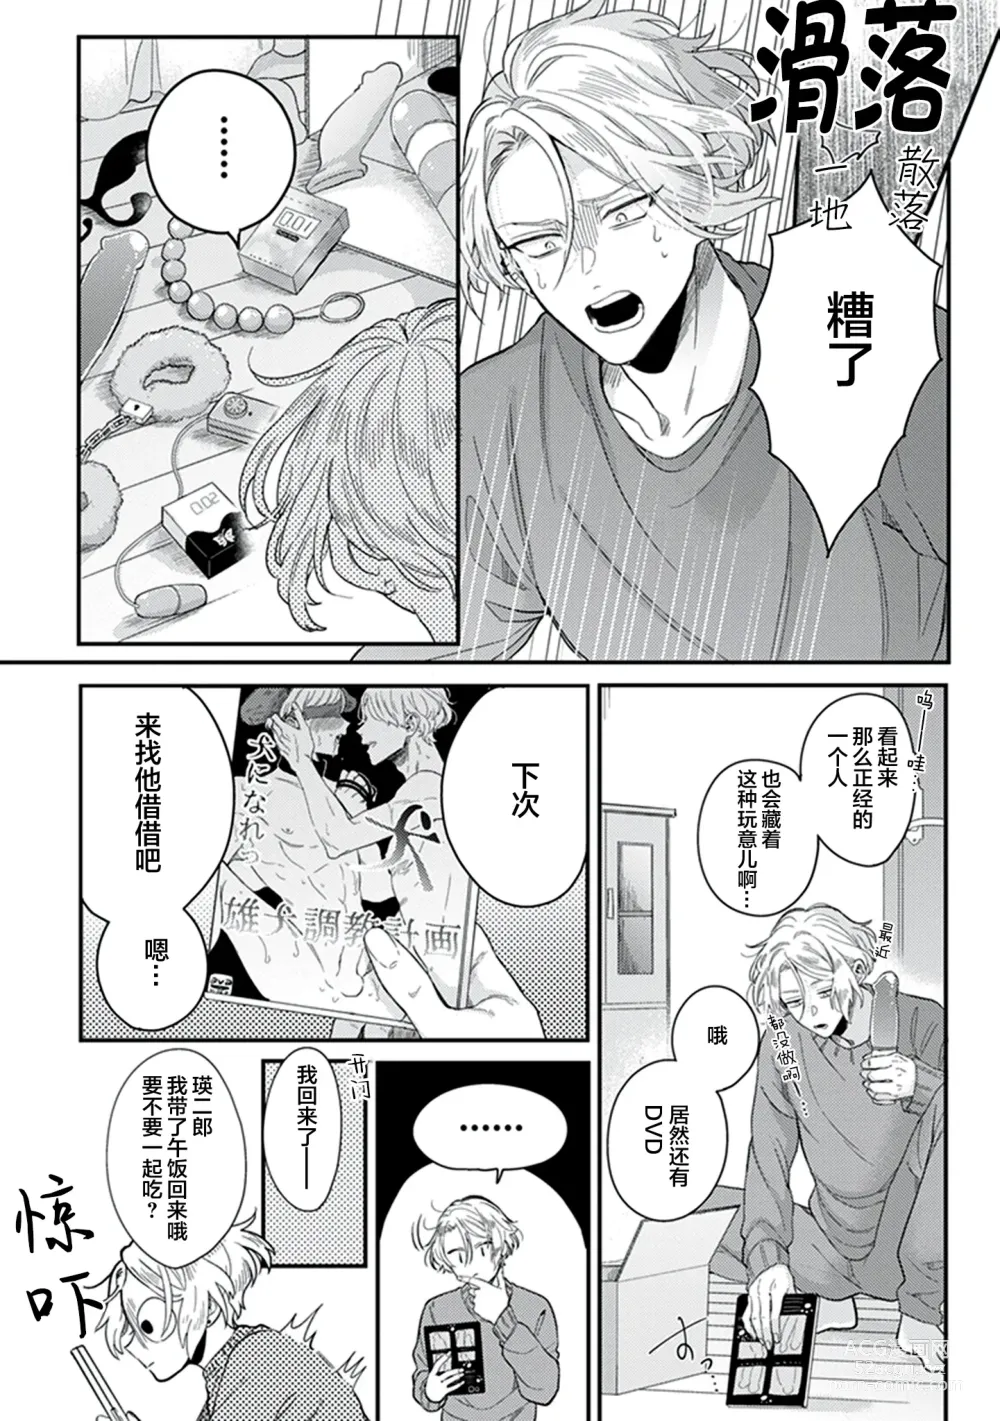 Page 23 of manga 爸爸修行中的二把手被糟糕的男人盯上了